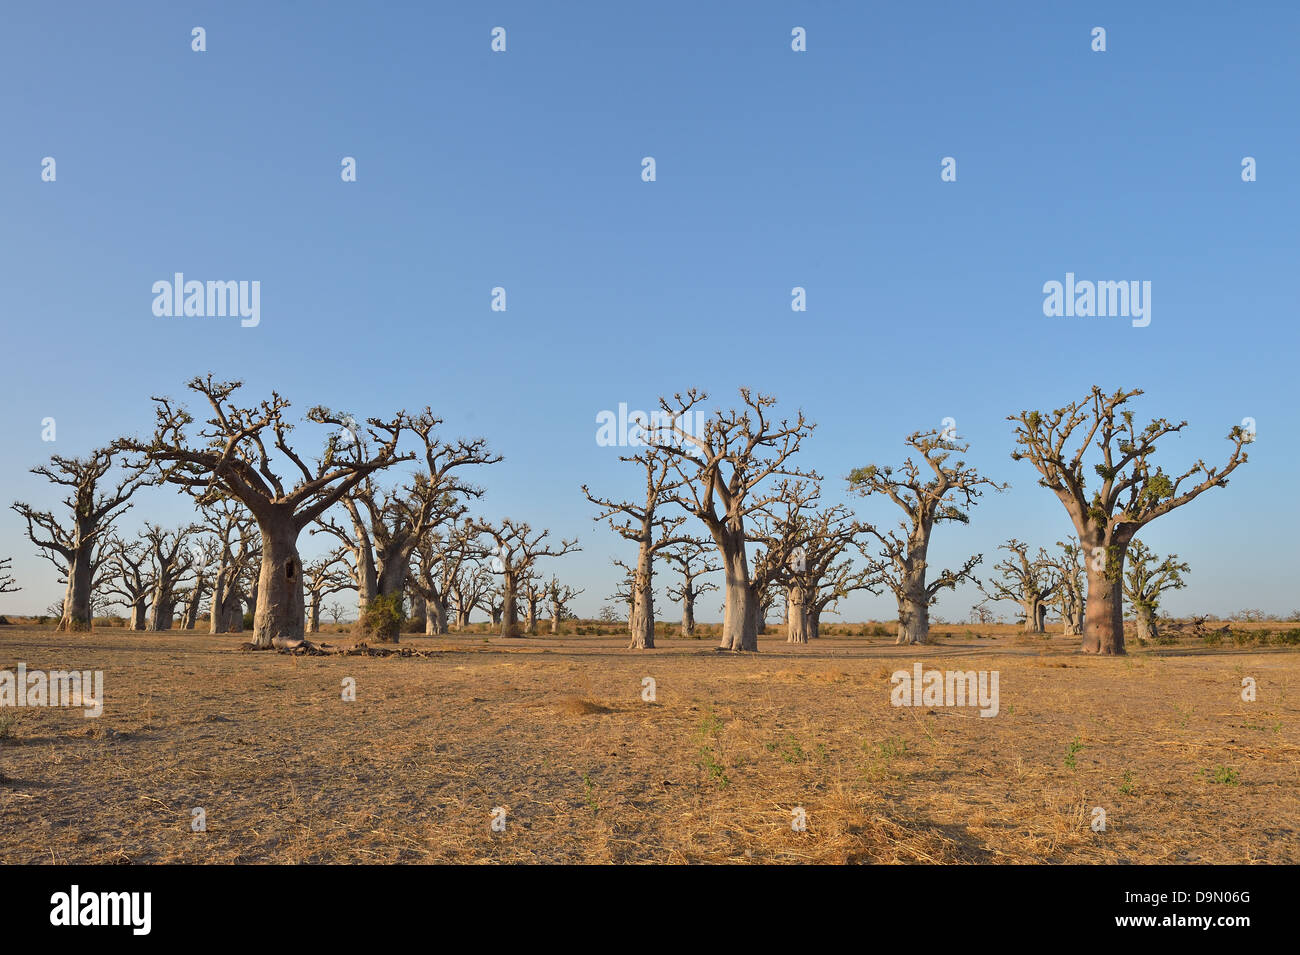 Baobab - Dead-rata árbol - árbol de pan de mono - árbol al revés (Adansonia digitata) cerca de la reserva de Bandia Foto de stock